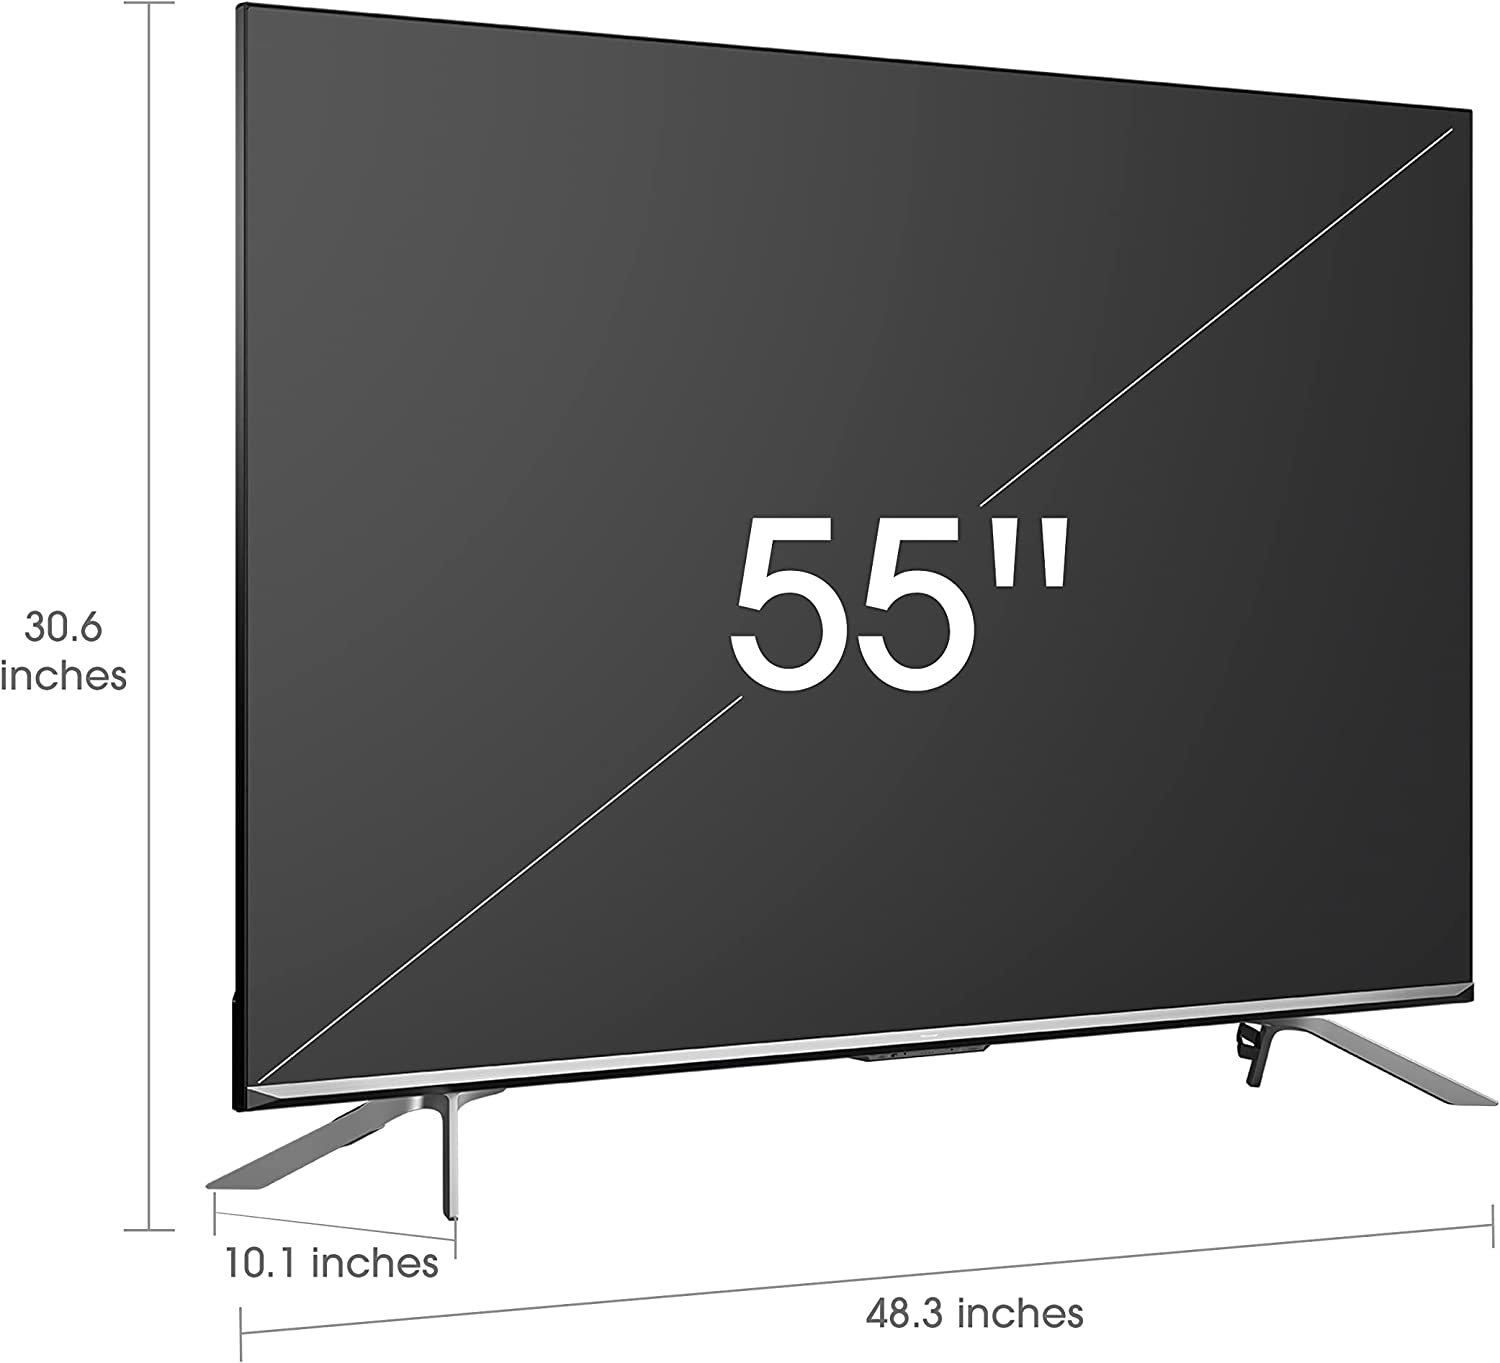 Hisense 55U7H 55" 7 Series Quantum ULED 4K UHD Smart Google TV